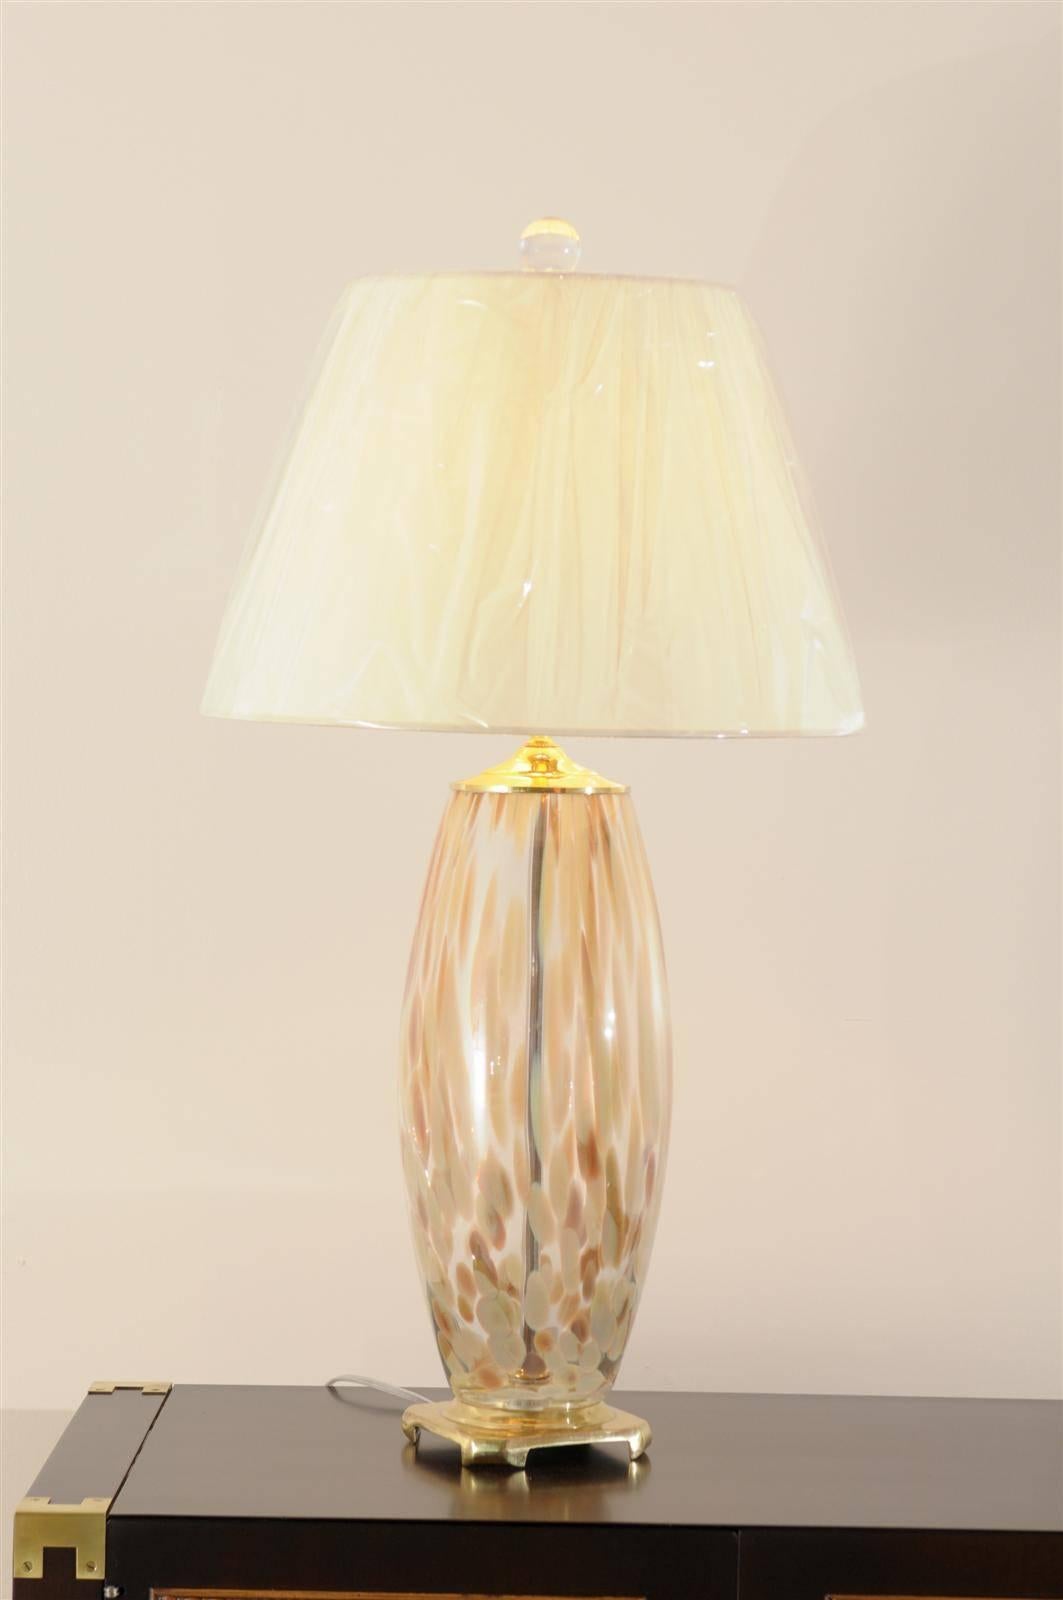 Ein hervorragendes Paar Lampen aus mundgeblasenem Muranoglas, ca. 1970er Jahre. Schöne Form und Farbe. Exquisiter Schmuck! Ausgezeichneter restaurierter Zustand. Alle Messingteile sind neu beschichtet worden. Neu verdrahtet mit klarem Kabel,